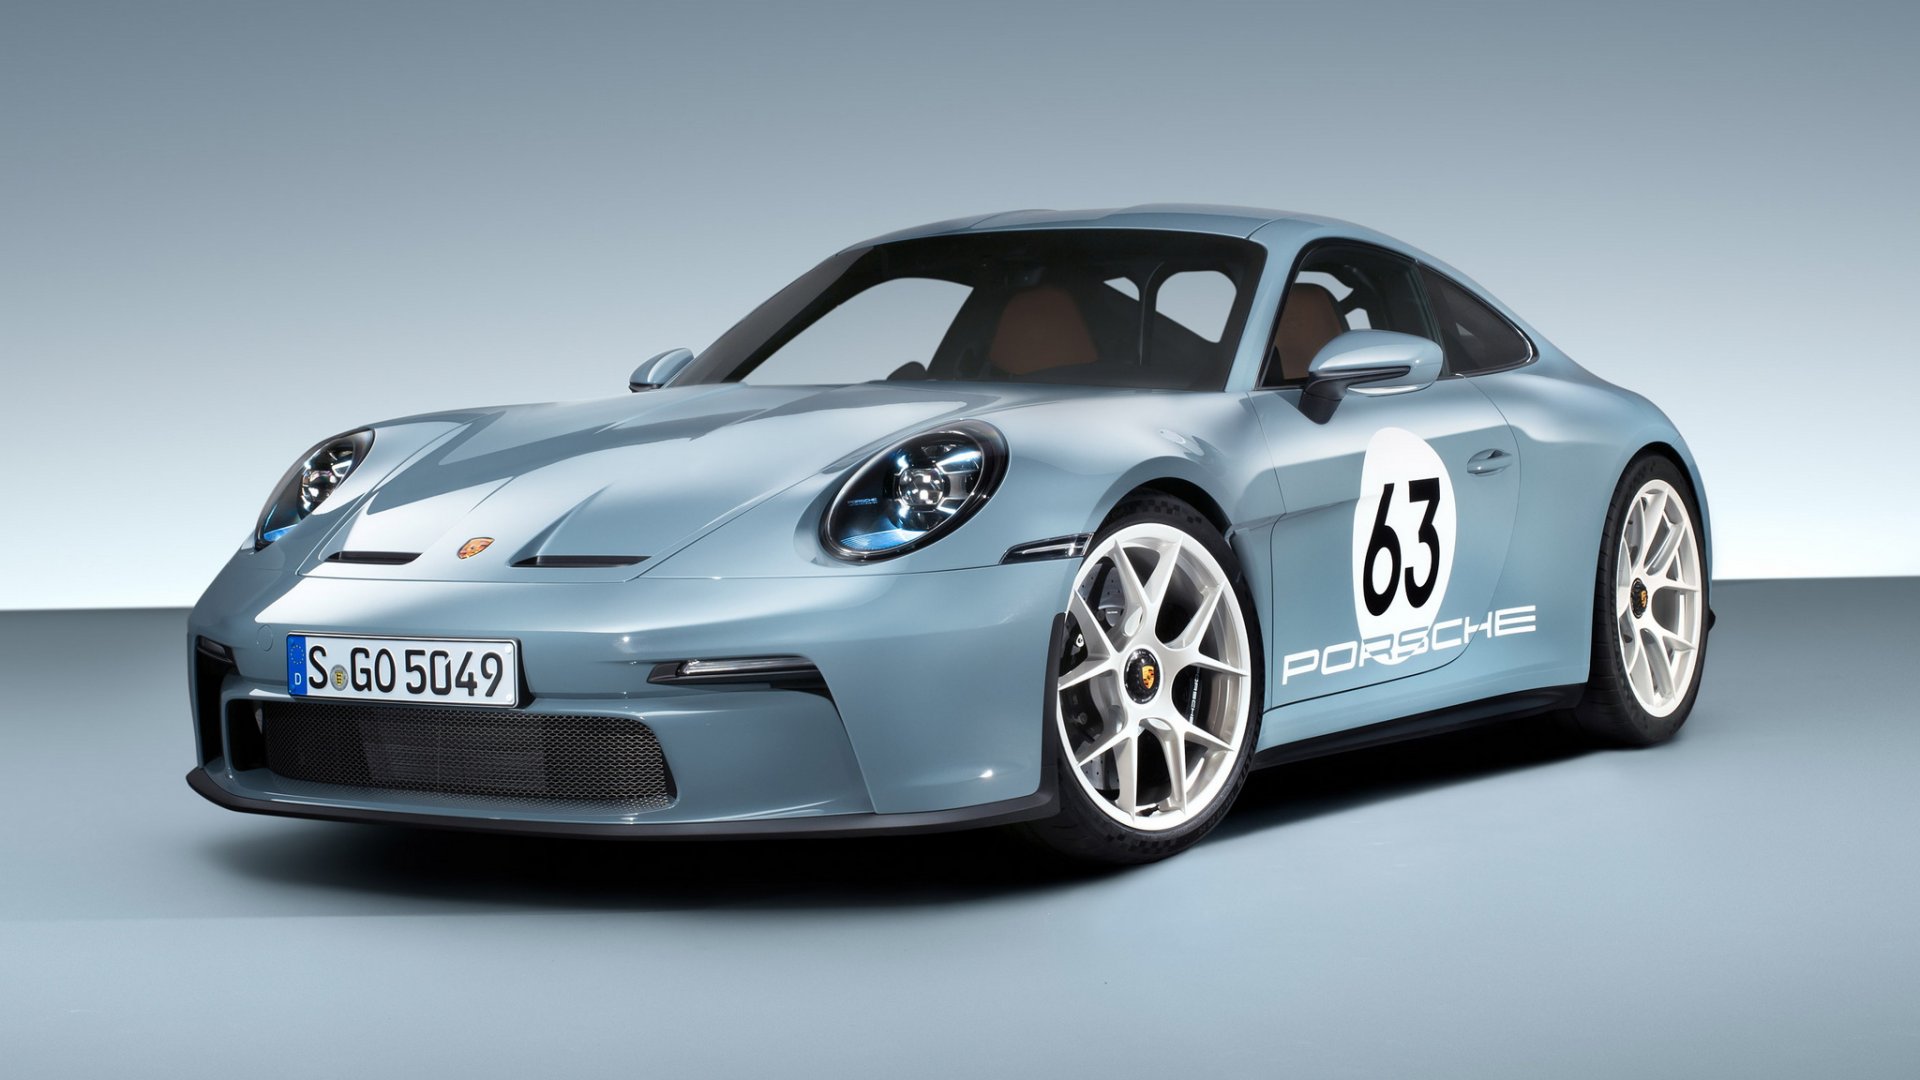 ใหม่! Porsche 911 S/T รุ่นพิเศษฉลองครบรอบ 60 ปี 911 